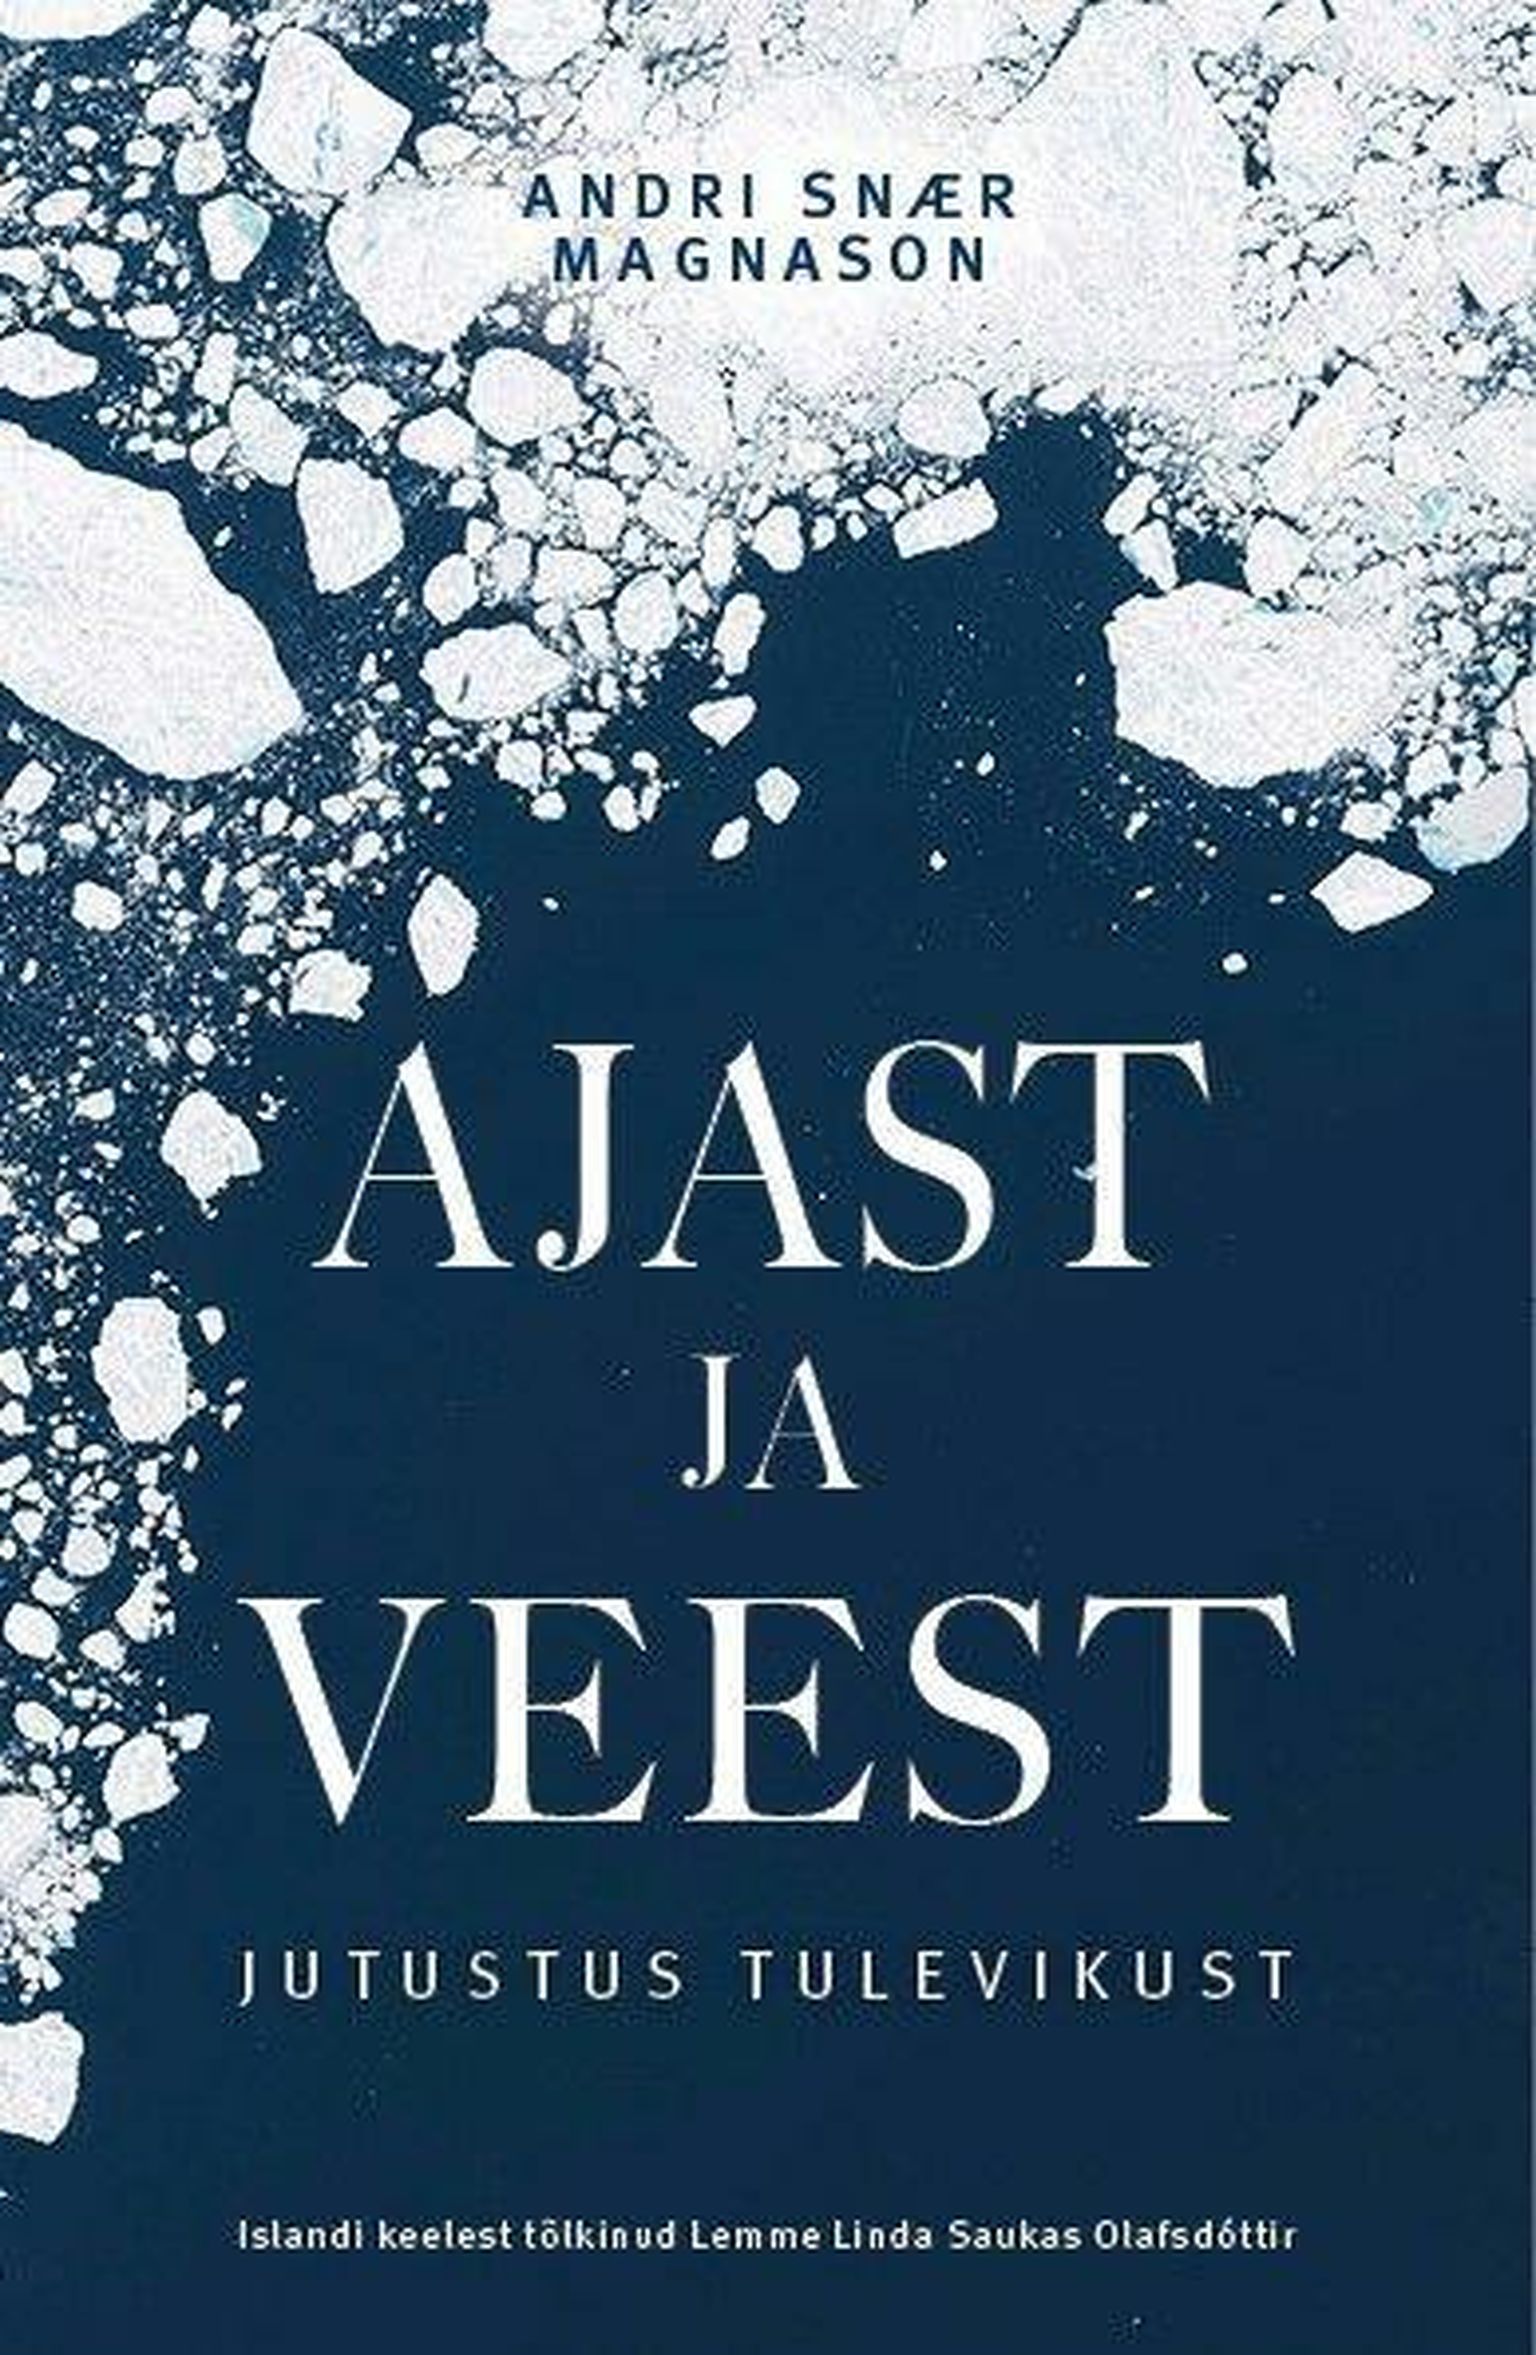 Andri Snær Magnason, «Ajast ja veest. Jutustus tulevikust».